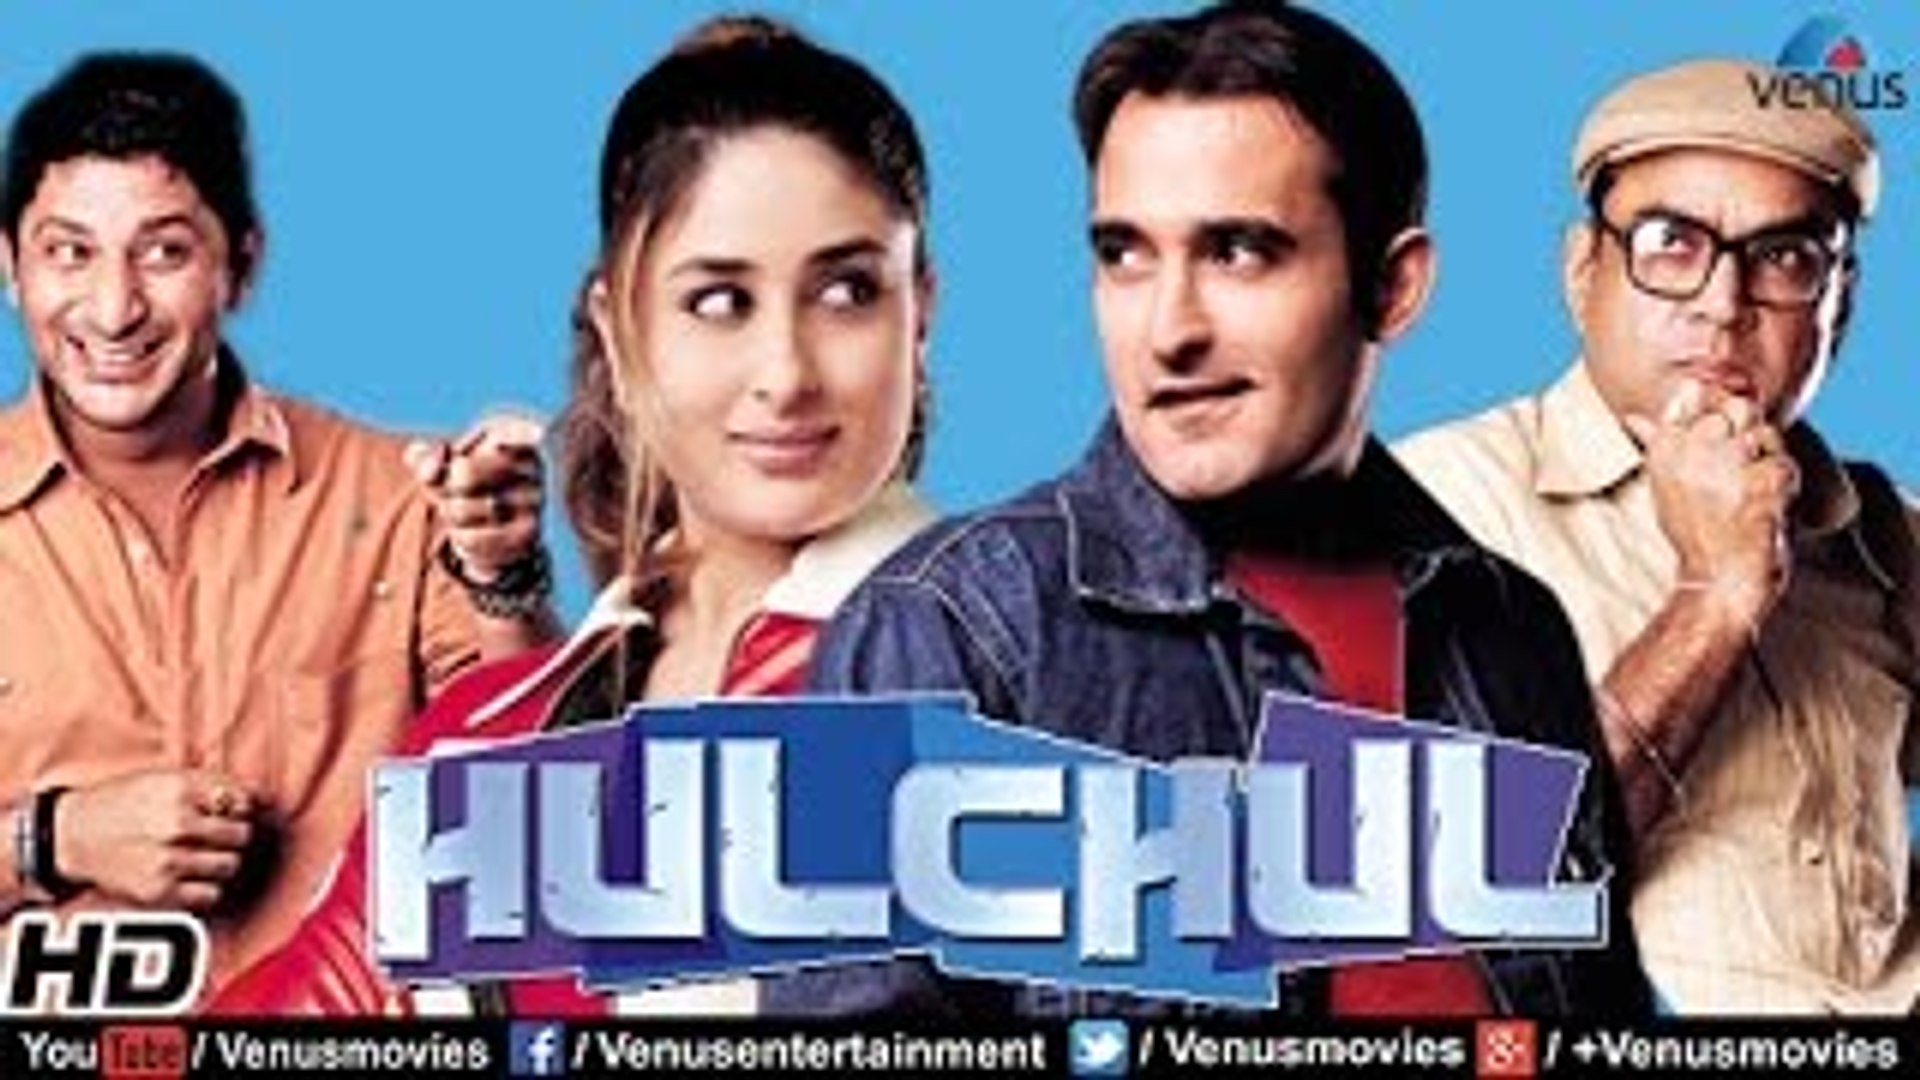 Hulchul _ Hindi Movies 2016 Full Movie _ Akshaye Khanna _ Kareena Kapoor _ Bollywood Comedy Movies p